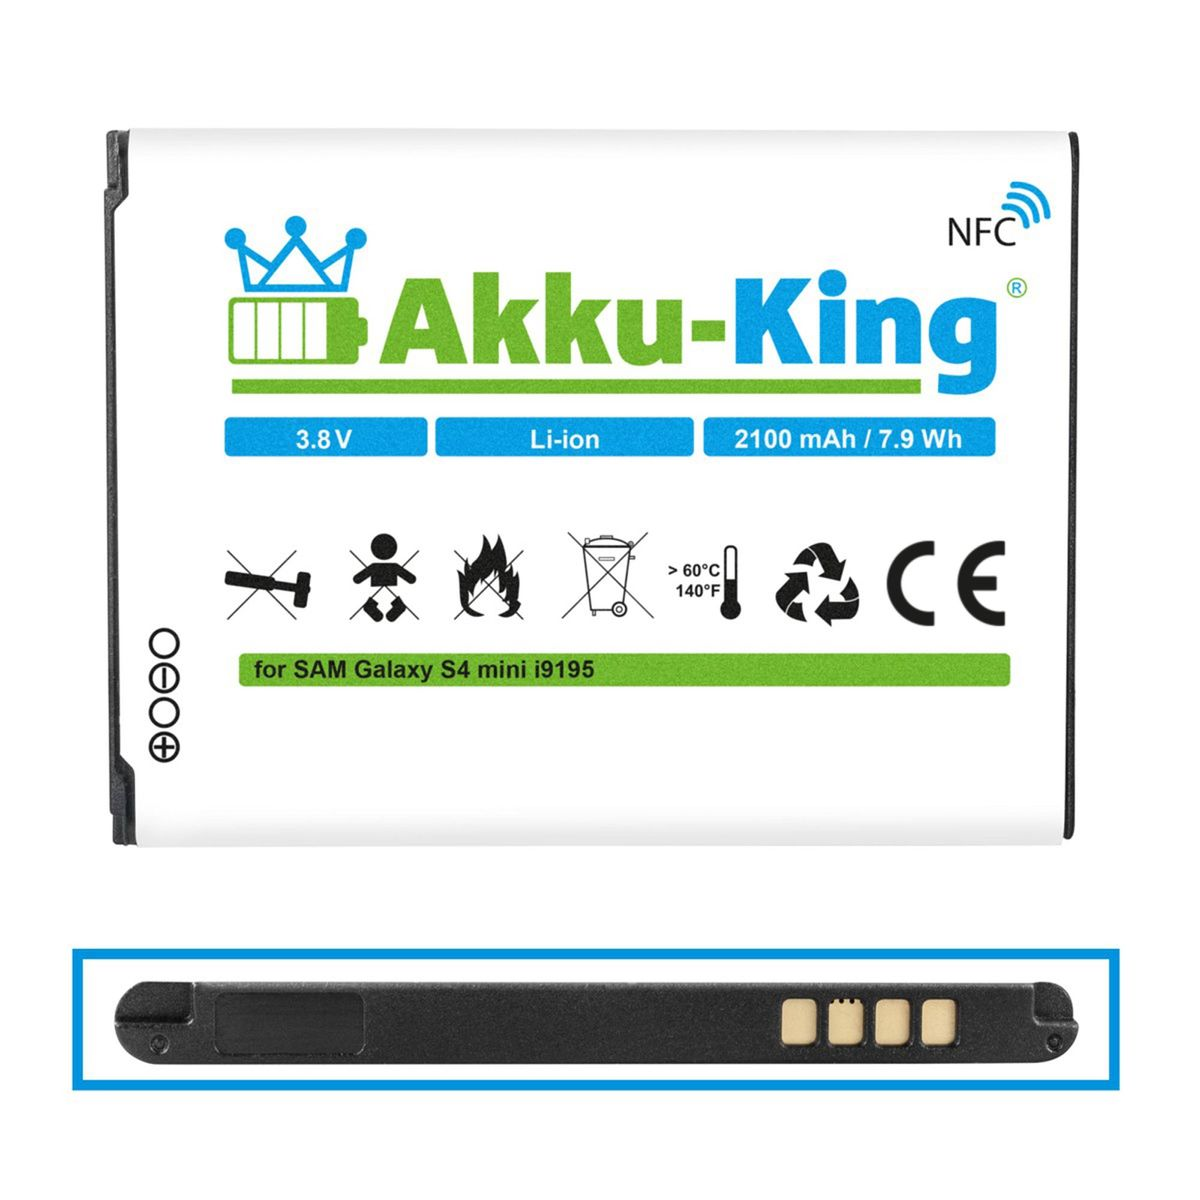 Li-Ion kompatibel Akku NFC AKKU-KING Samsung 2100mAh Volt, EB-B500BE mit Handy-Akku, 3.8